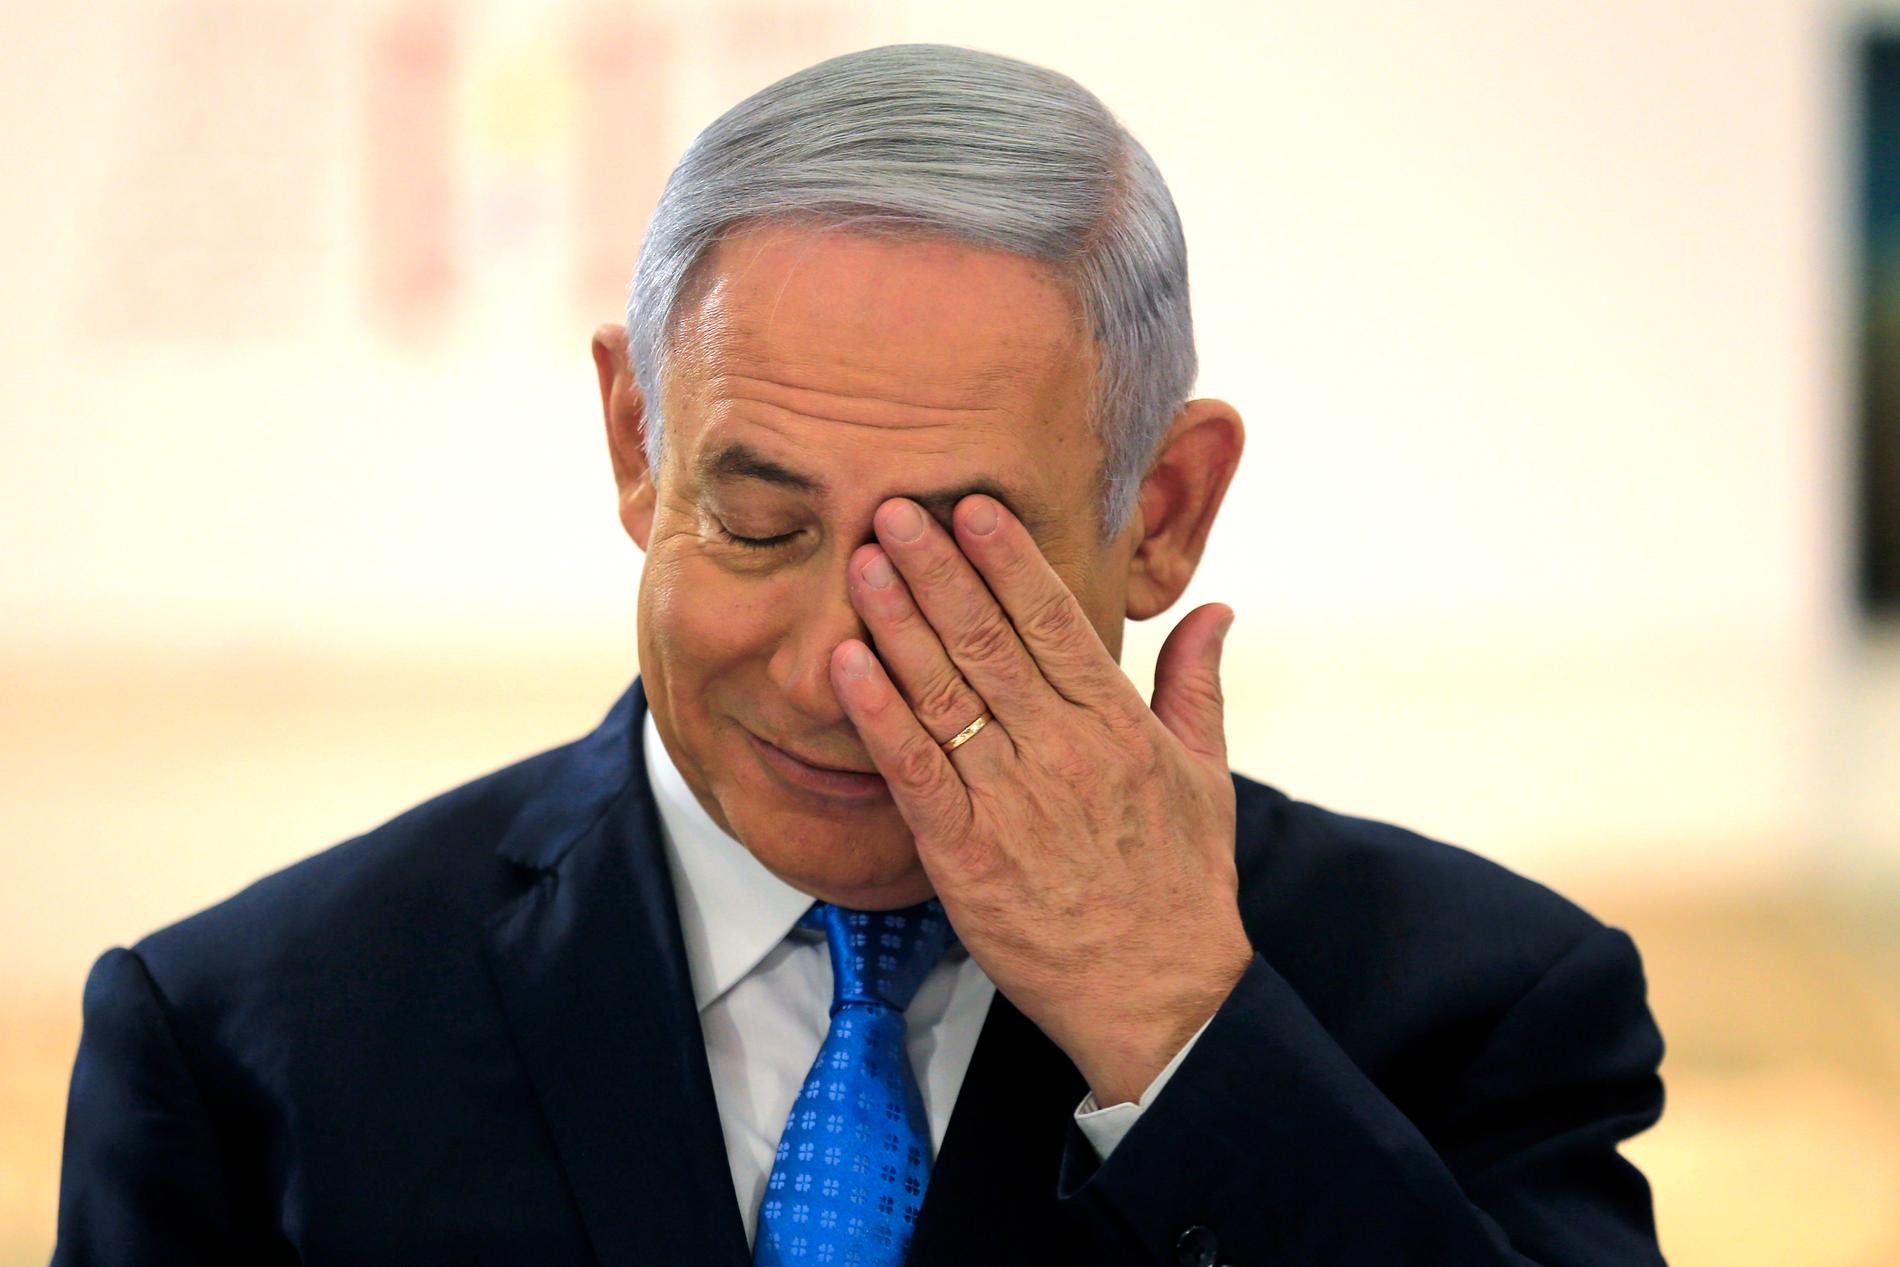 SKYLDER PÅ HAMAS: Israels statsminister Benjamin Netanyahu legger skylden for de drepte palestinerne på Hamas.